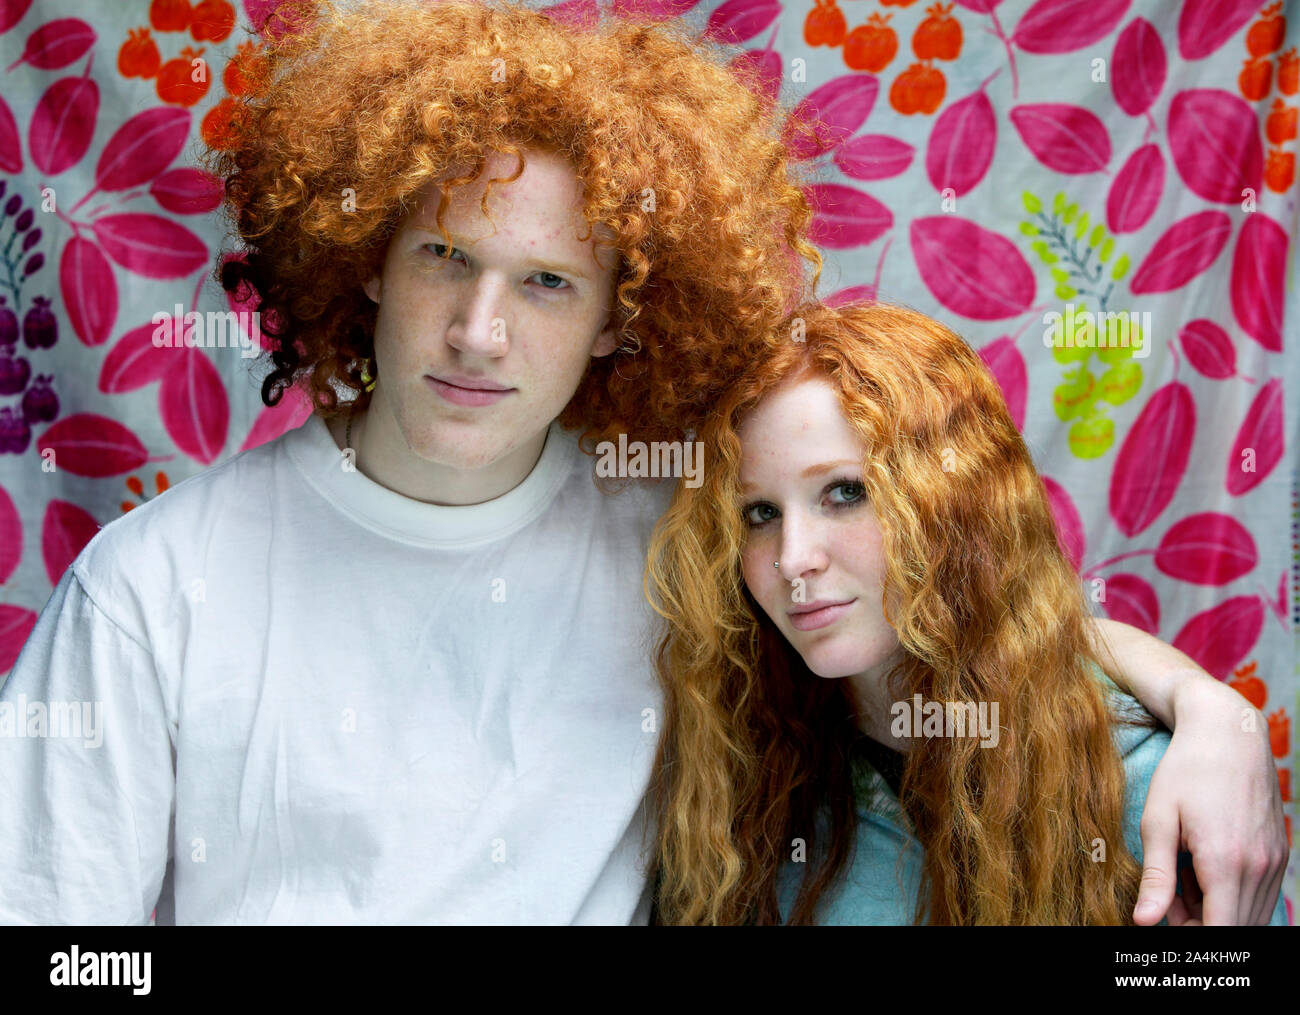 Junge und Mädchen mit lockigem Lange rote Haare - Ähnlichkeit Stockfoto